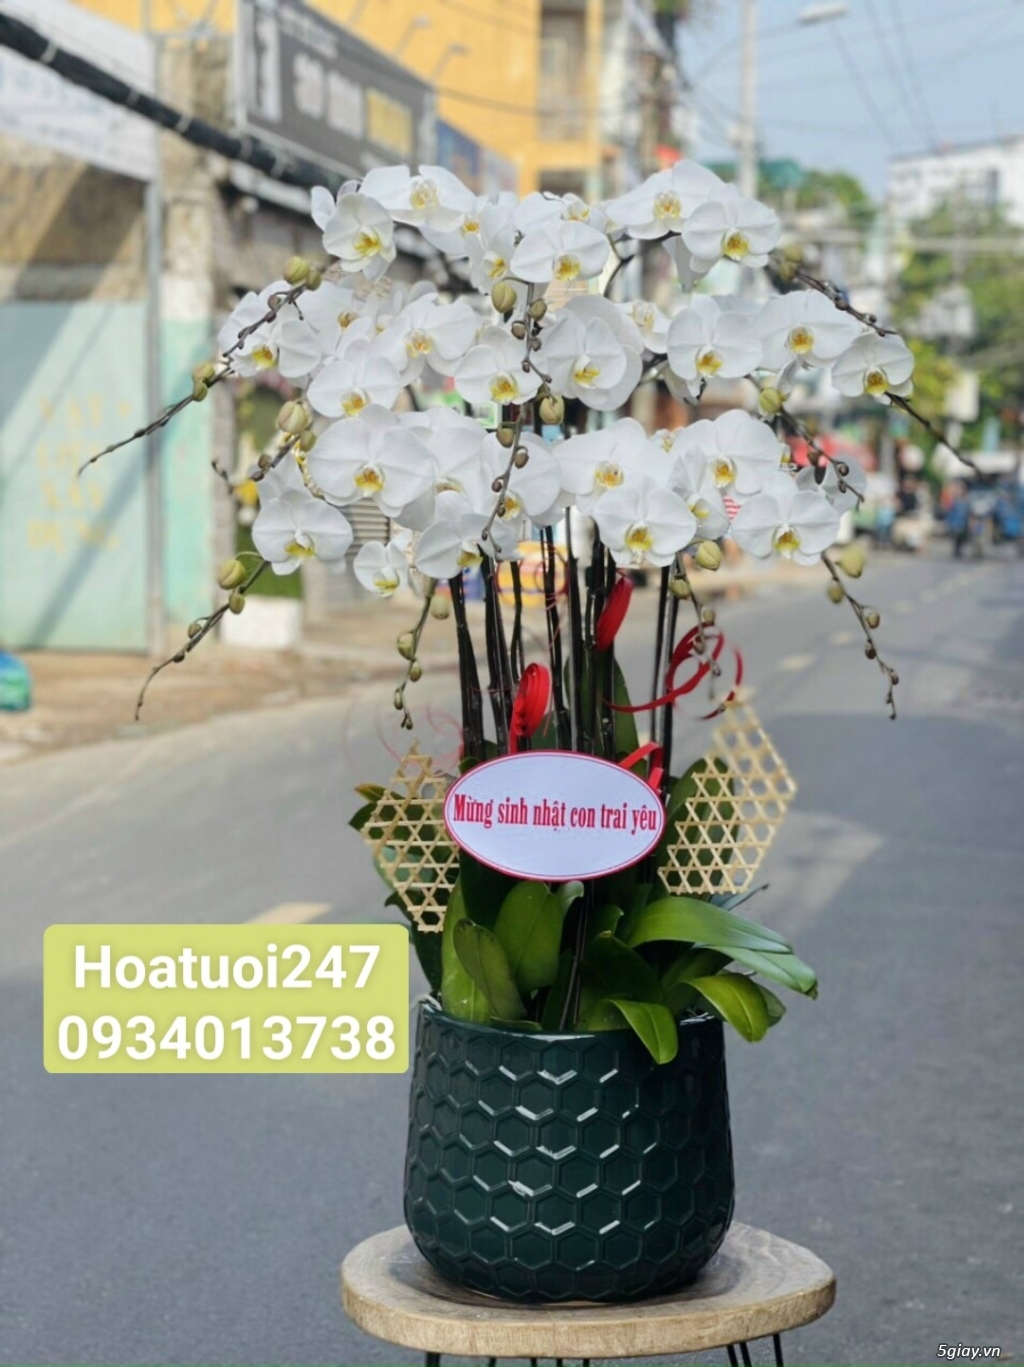 Shop hoa tươi lan hồ điệp quận Tân Bình tphcm 0934013738 - 1